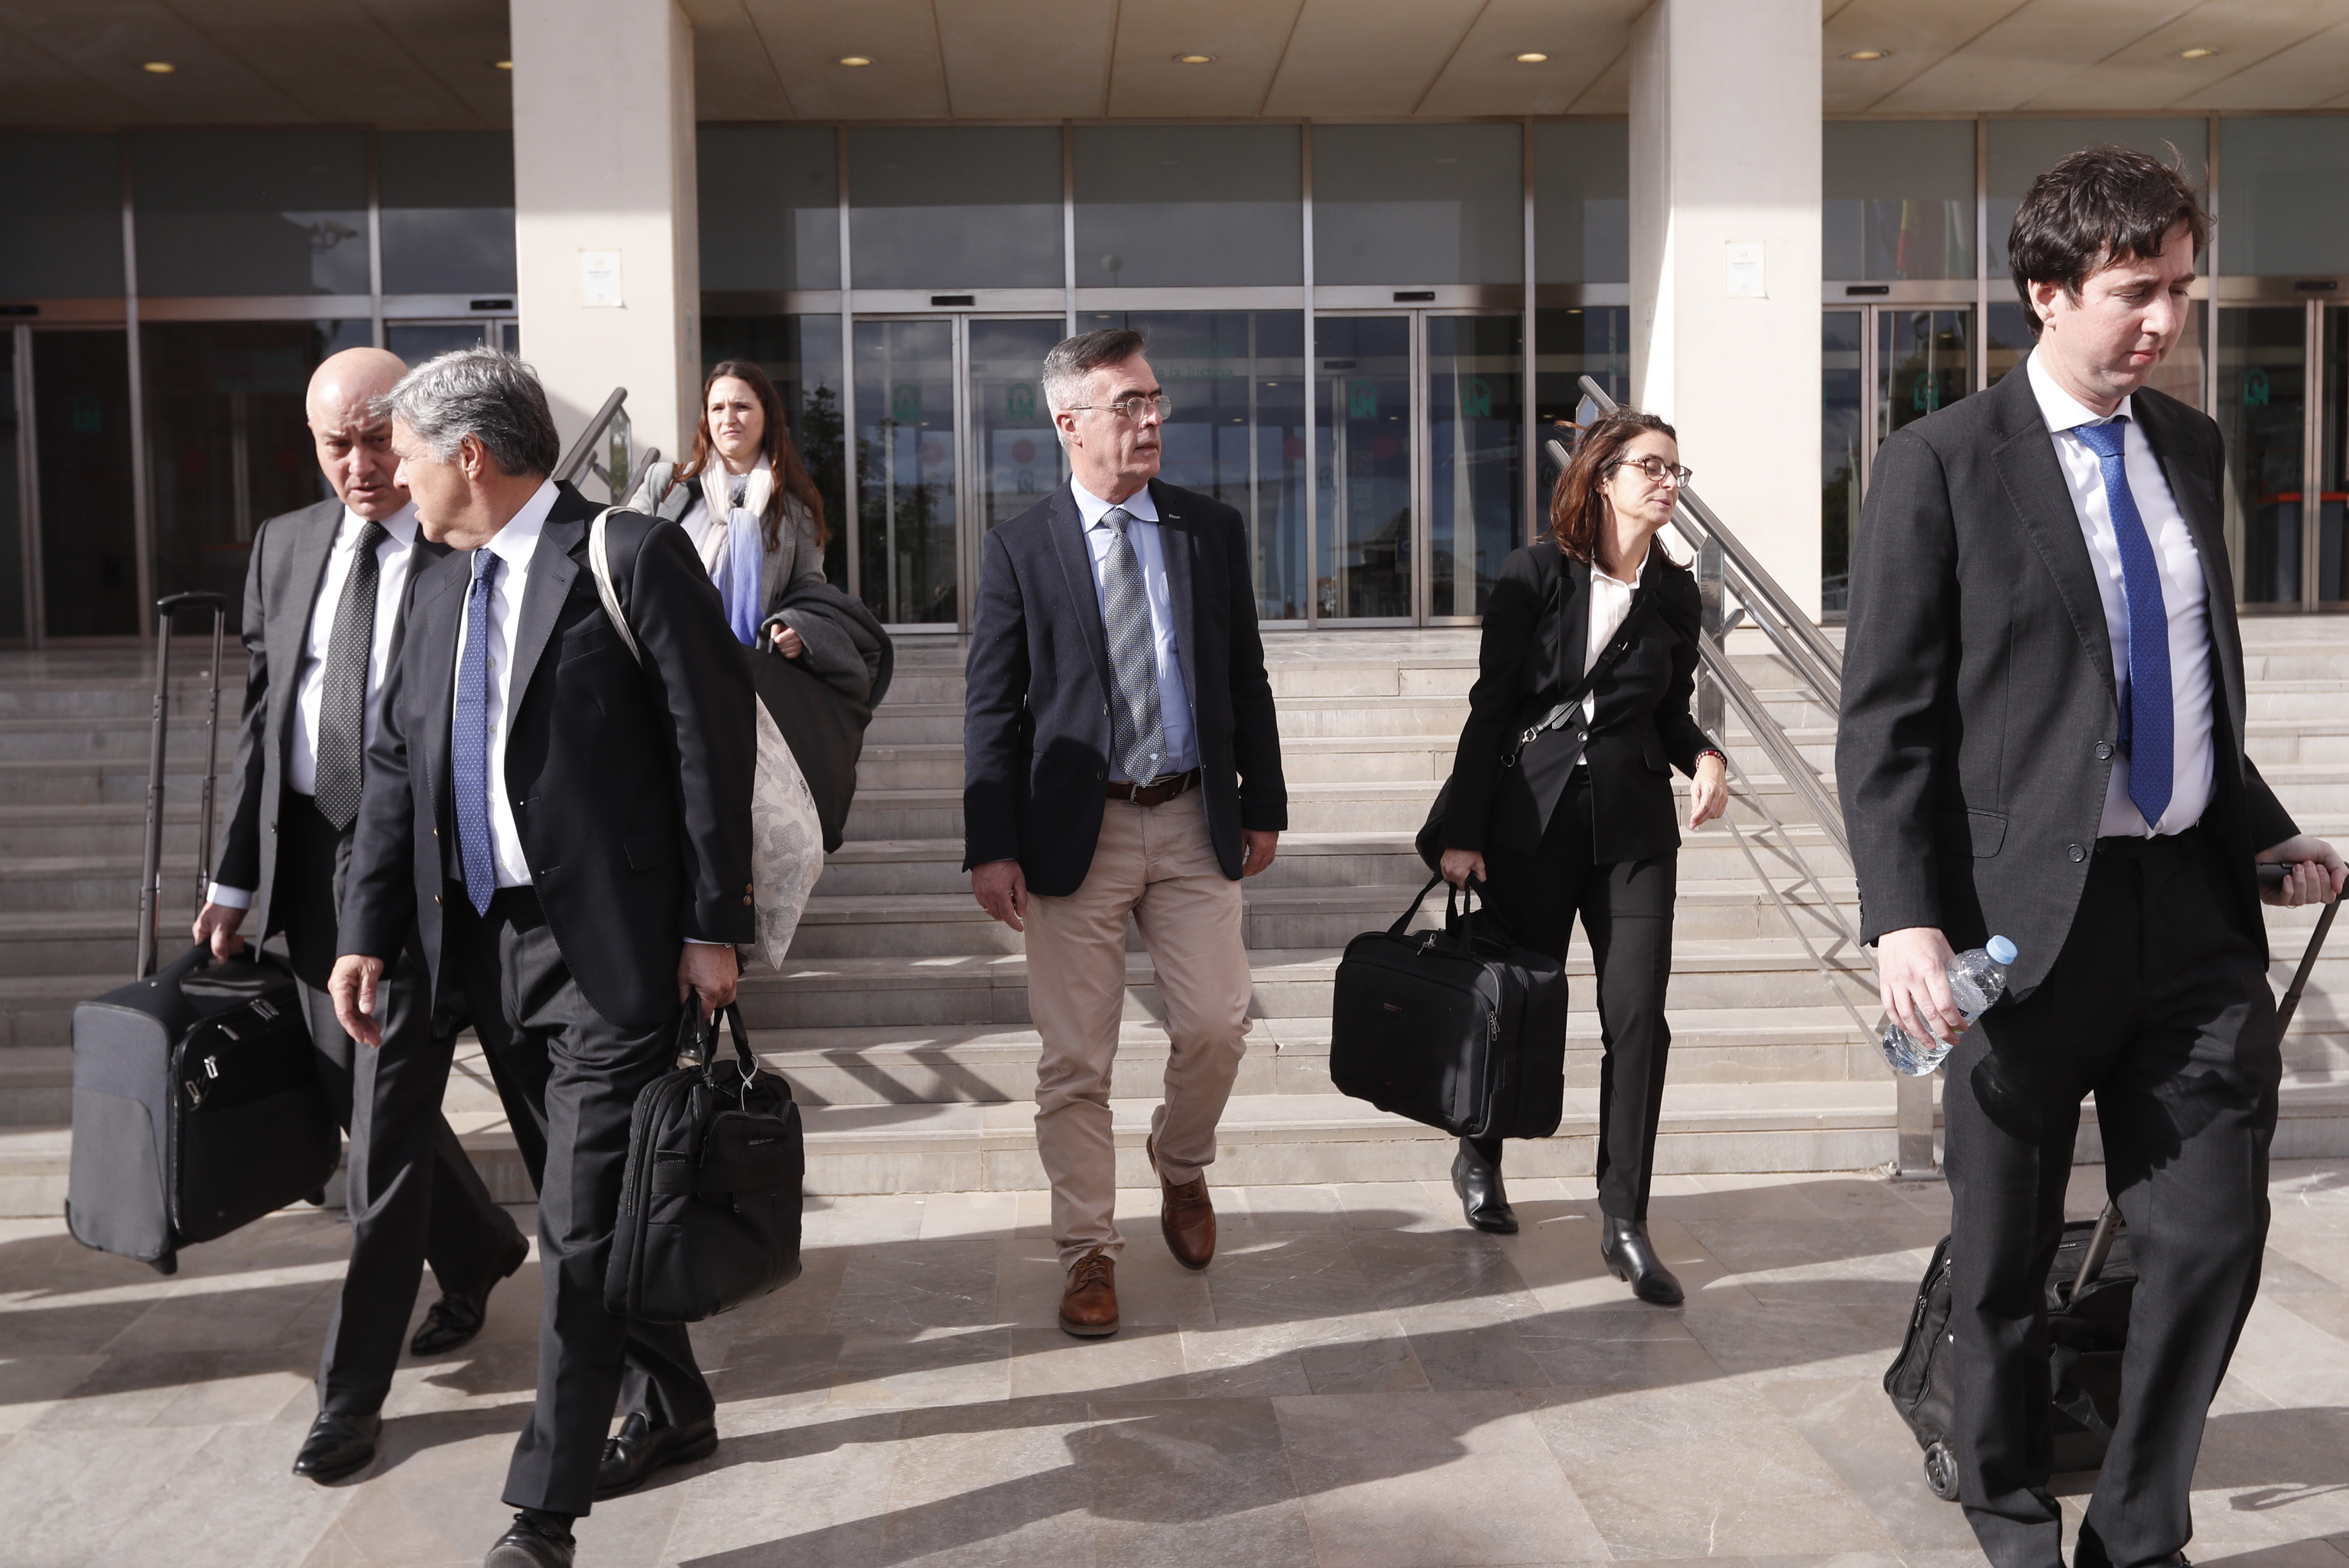 En el centro de la imagen, el ex alcalde Barrientos, saliendo de la sede judicial junto a varios abogados.